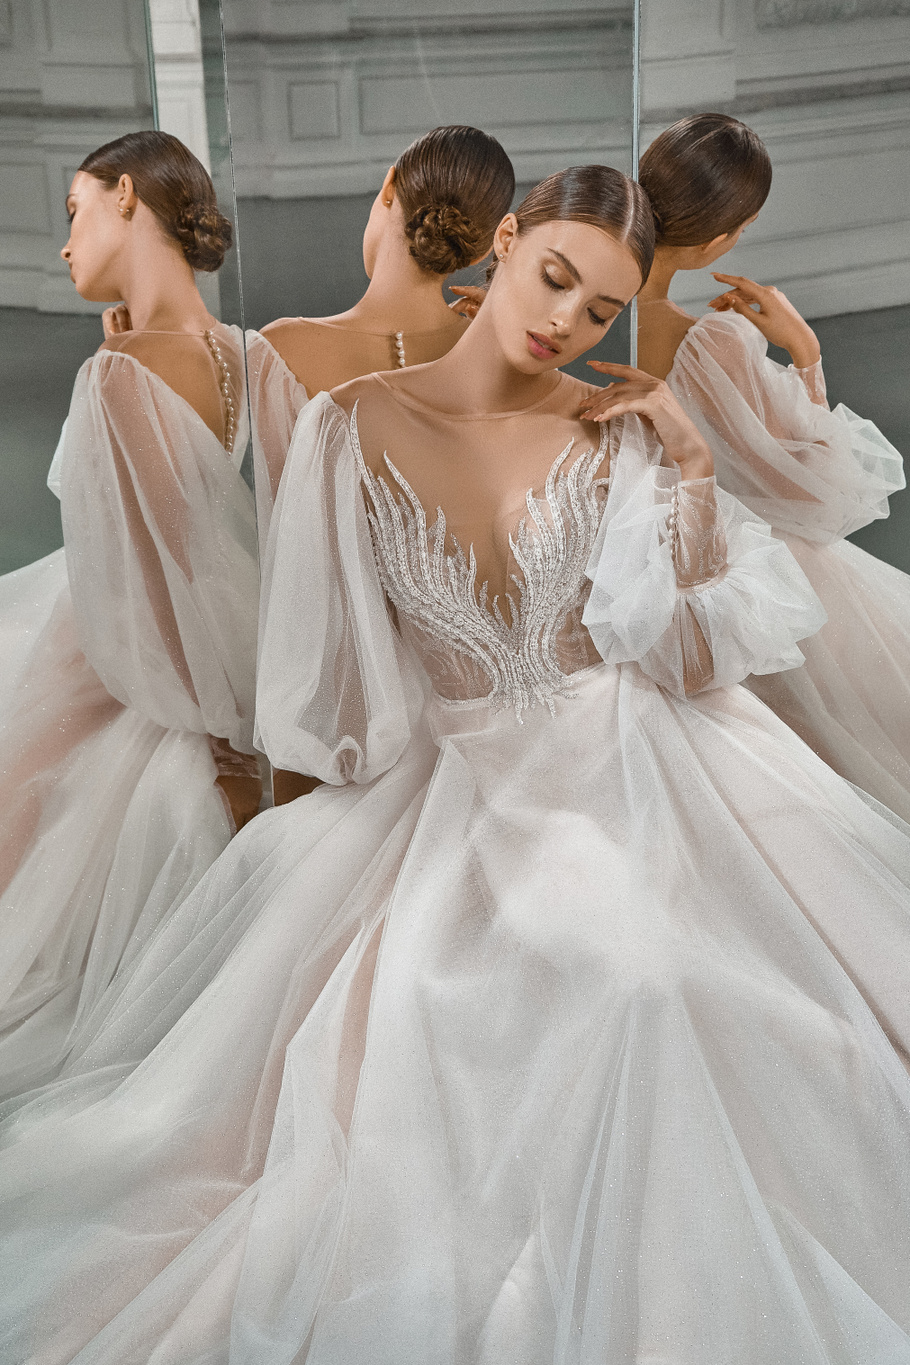 Свадебное платье «Найтири» Мэрри Марк  — купить в Краснодаре платье Найтири из коллекции «Гэлакси» 2021